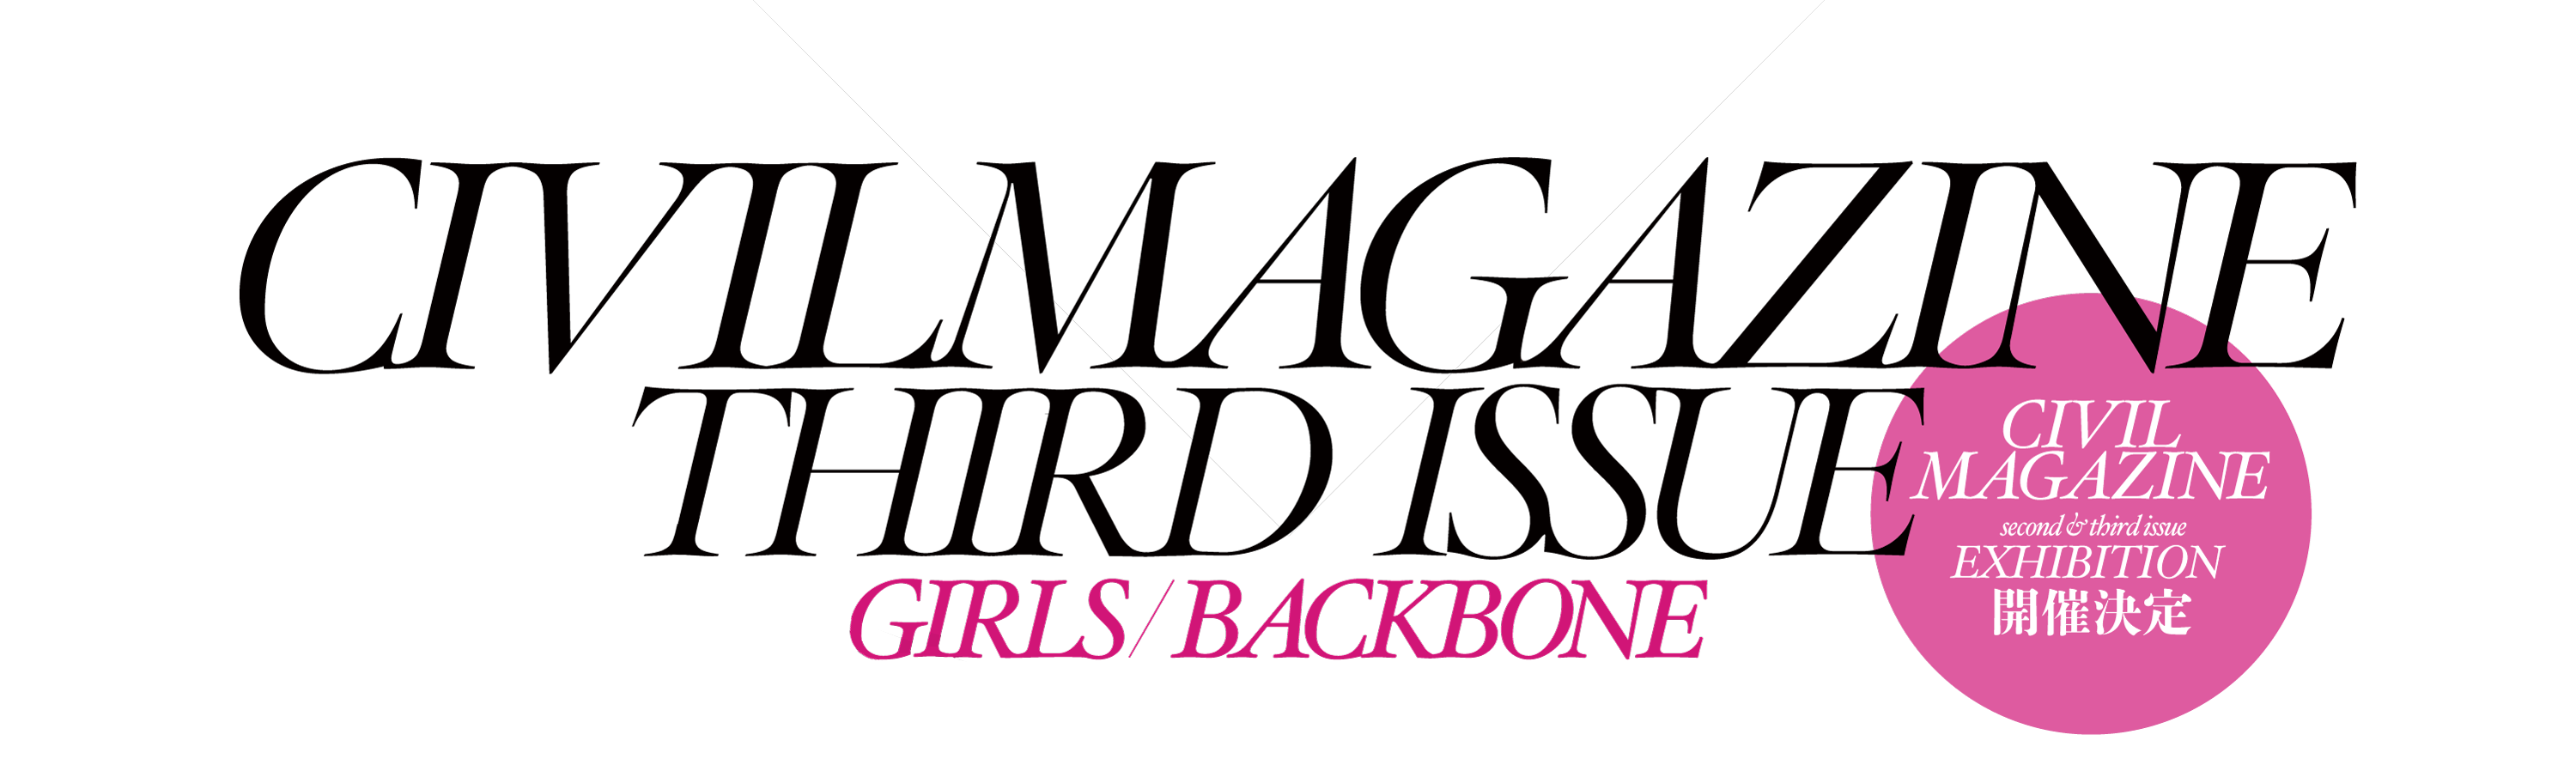 CIVILMAGAZINE THIRD ISSUE GIRLS/BACKBONE